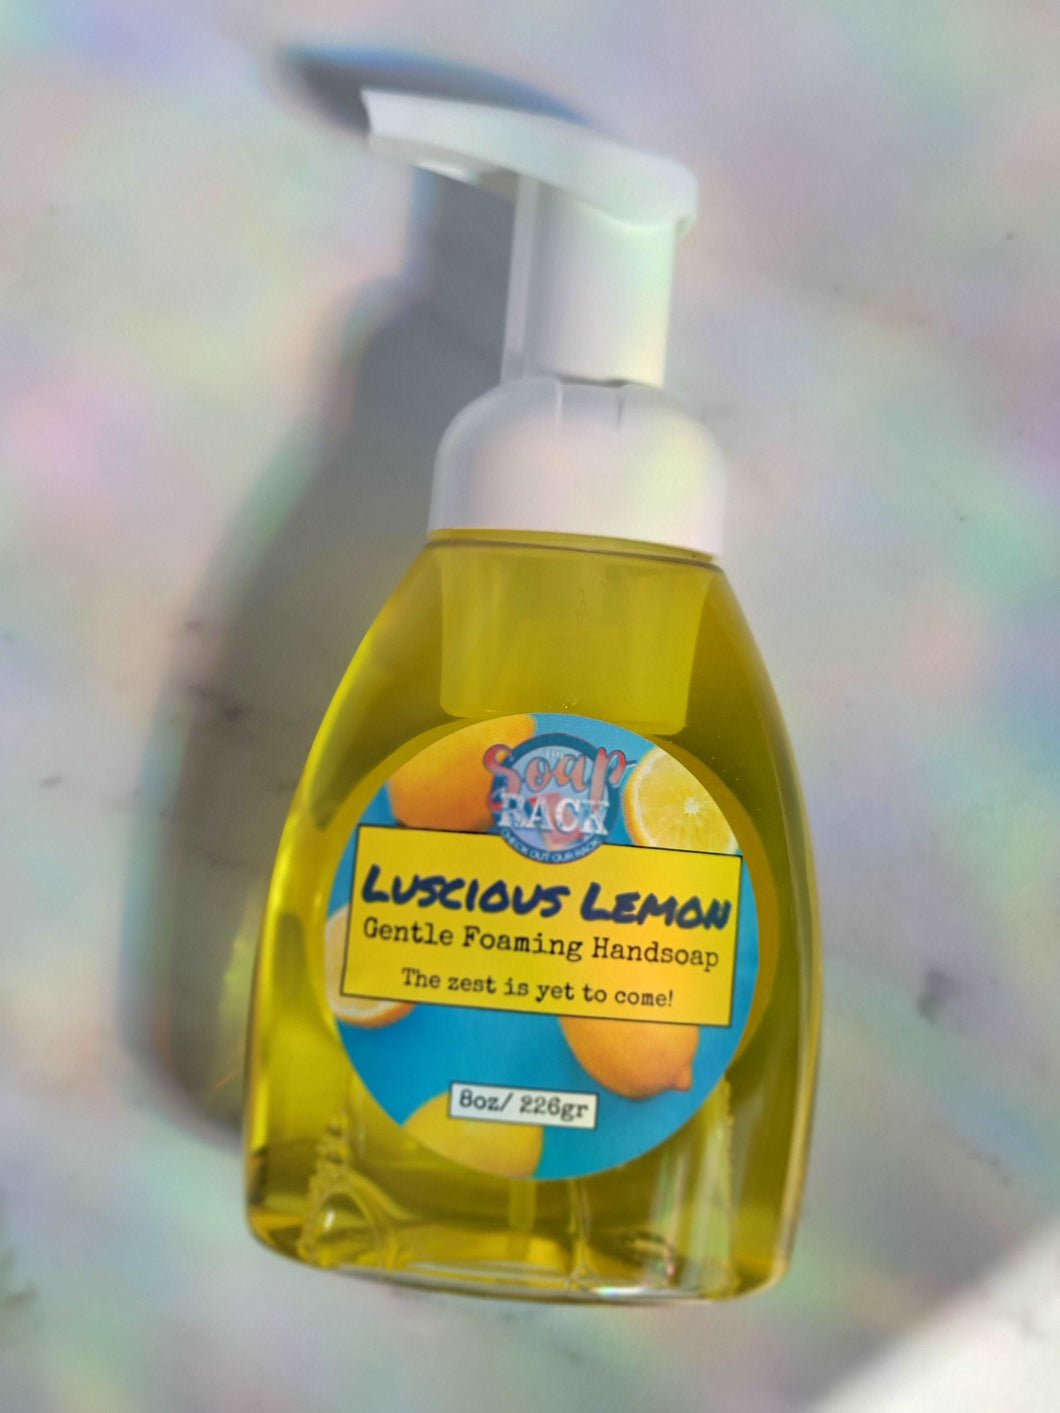 Lucious Lemon Foaming Handsoap